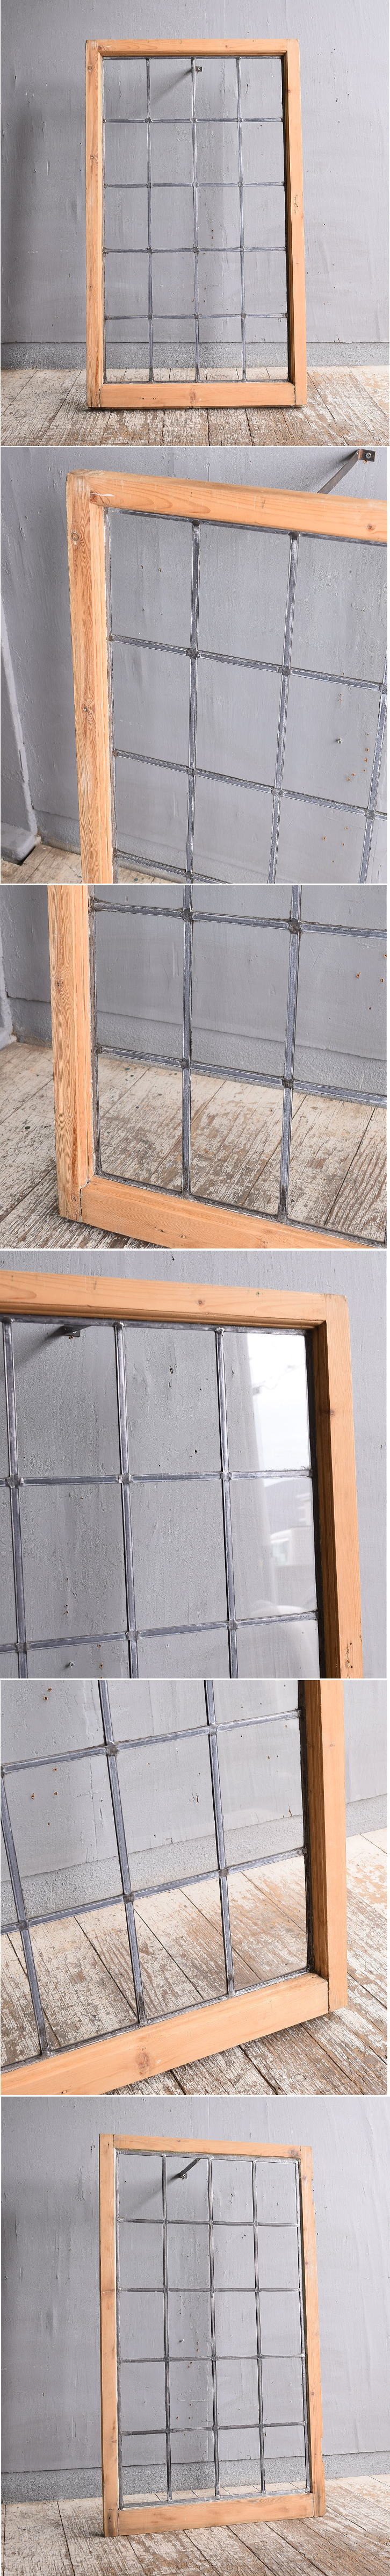 イギリス アンティーク 窓 無色透明 11678